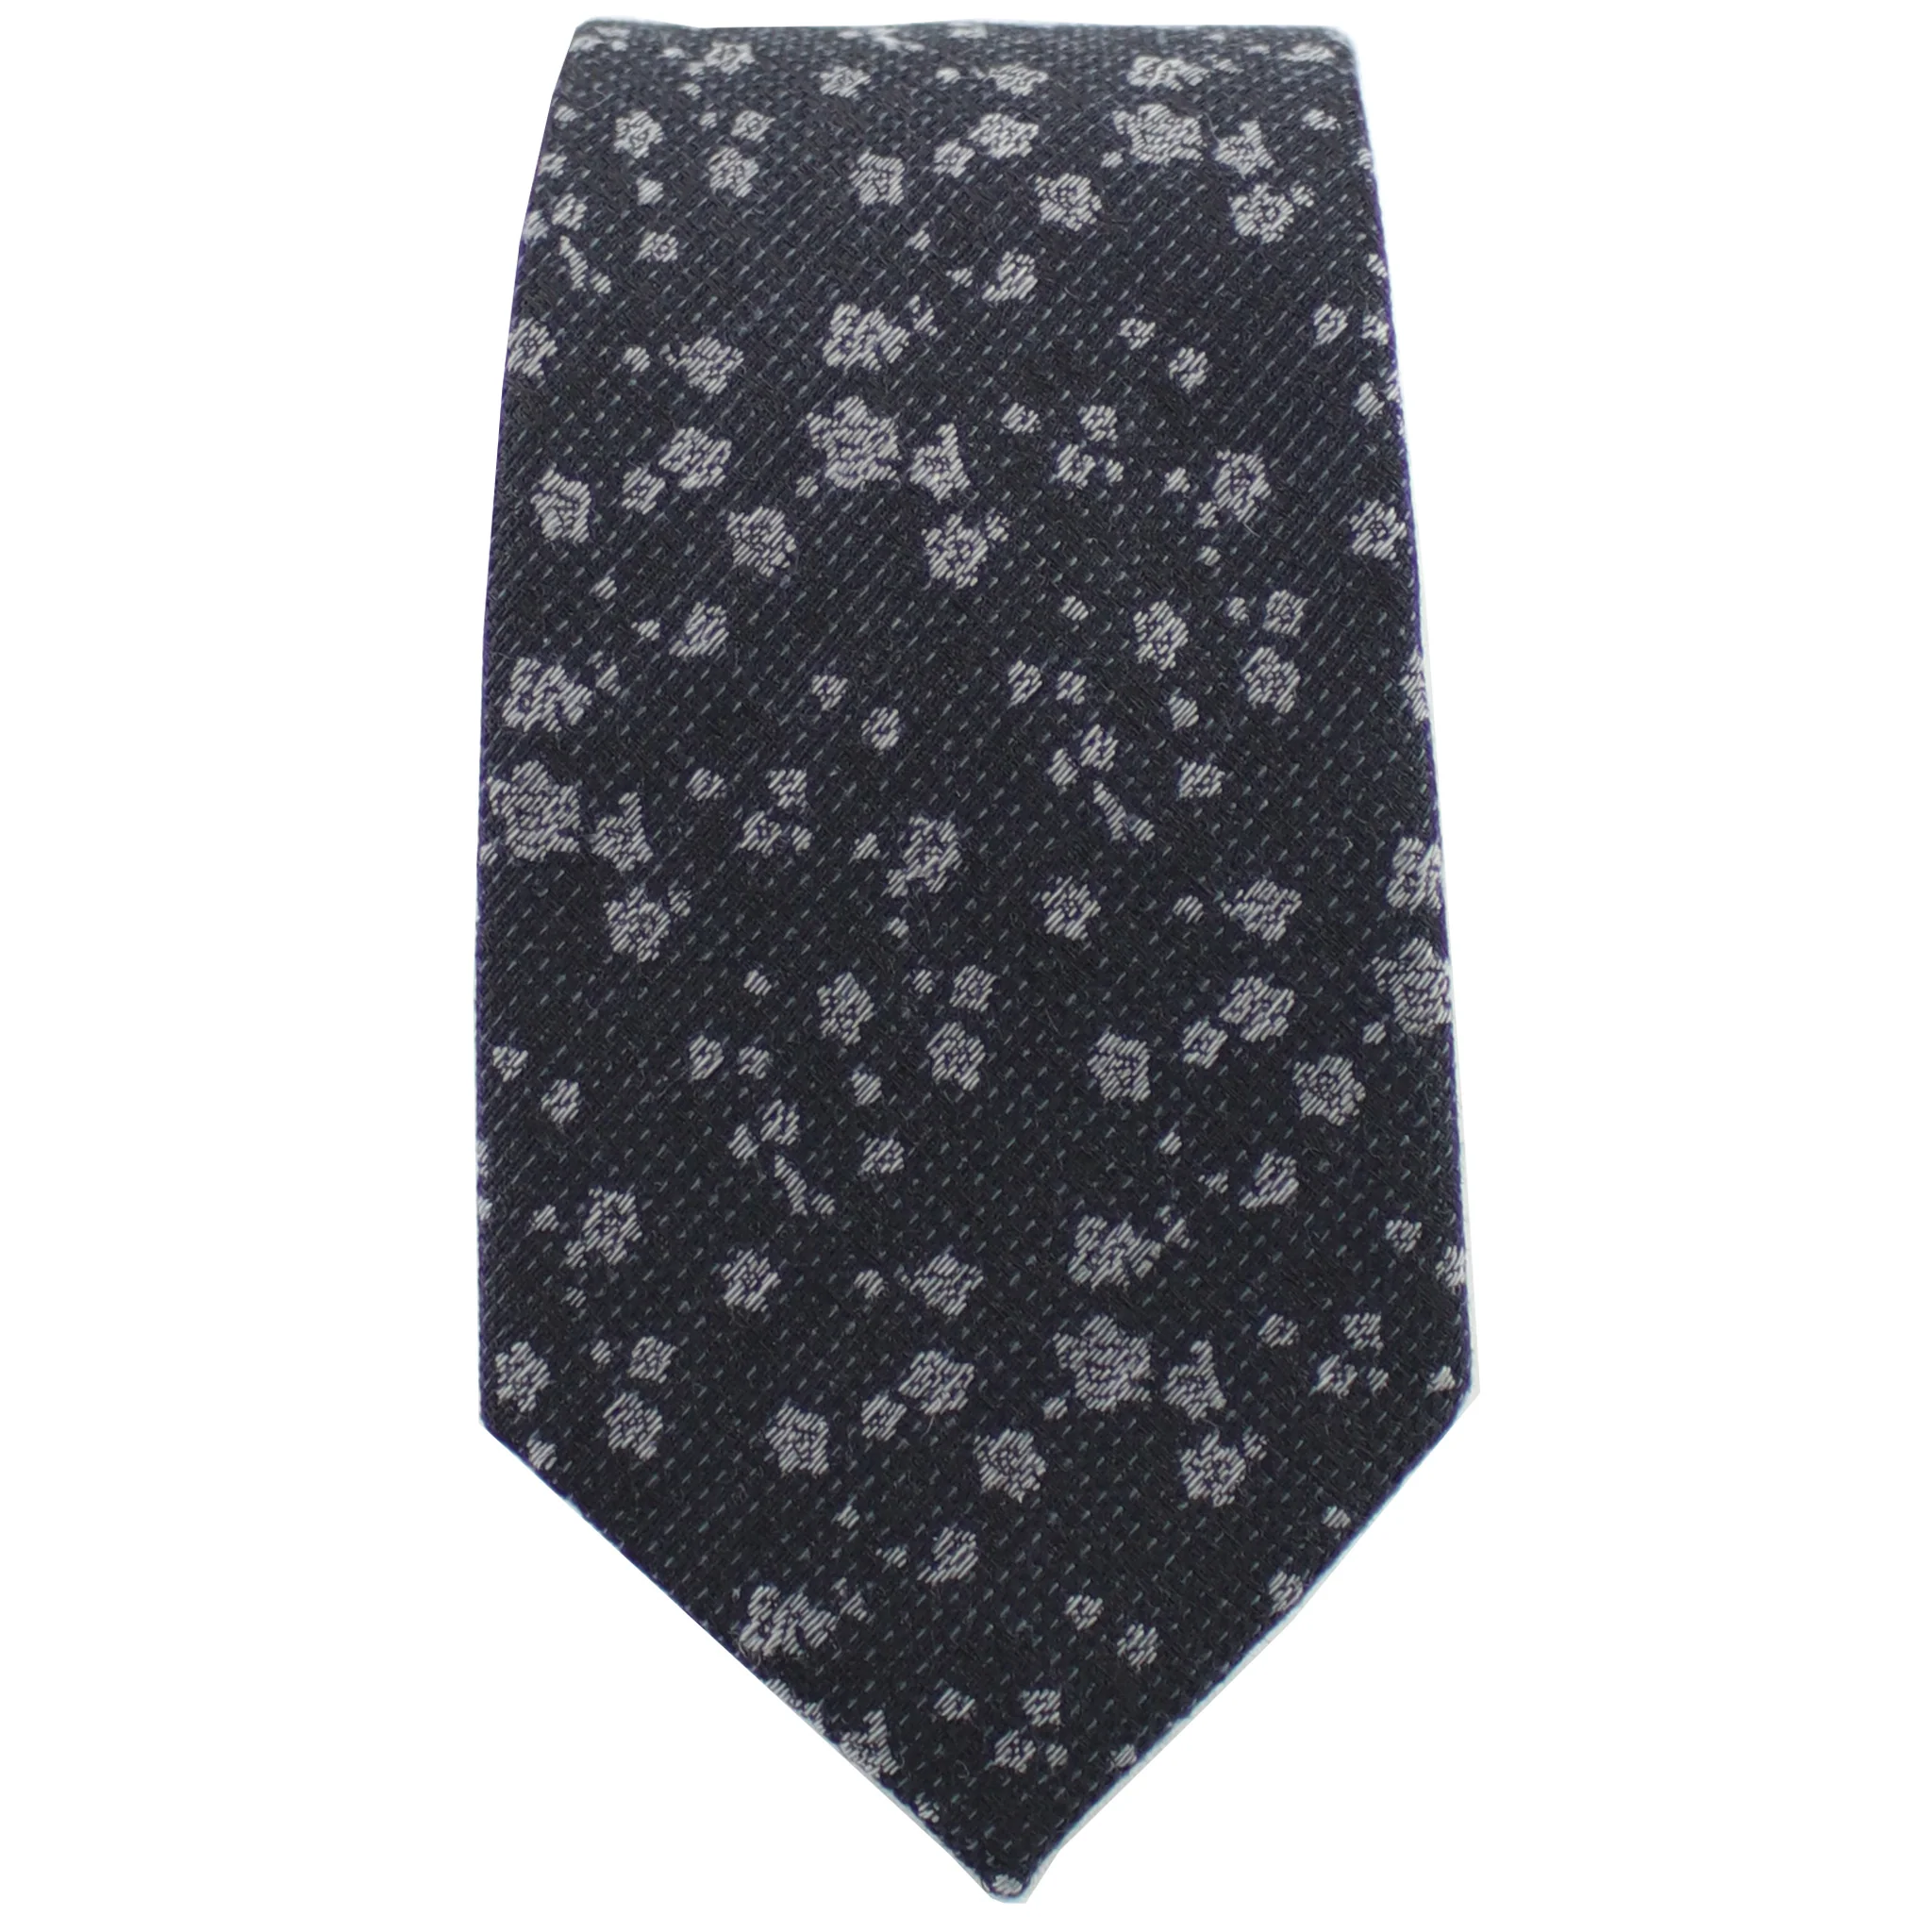 Black & Silver Floral Tie